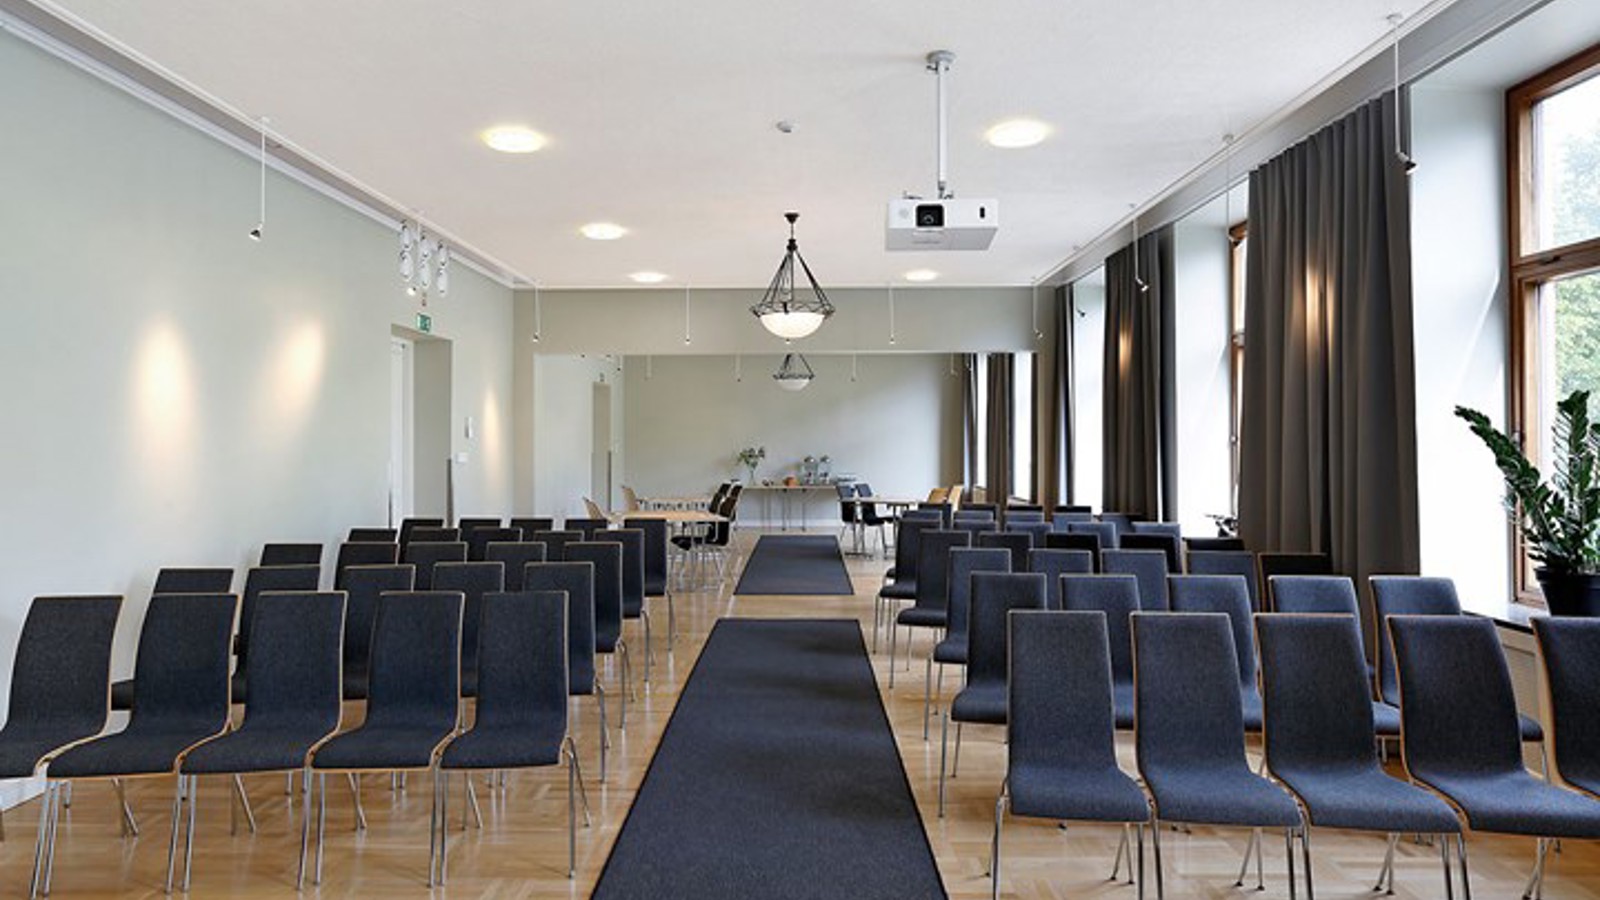 Konferensrum med biosittning, mörka stolar, ljusa väggar och stora fönster